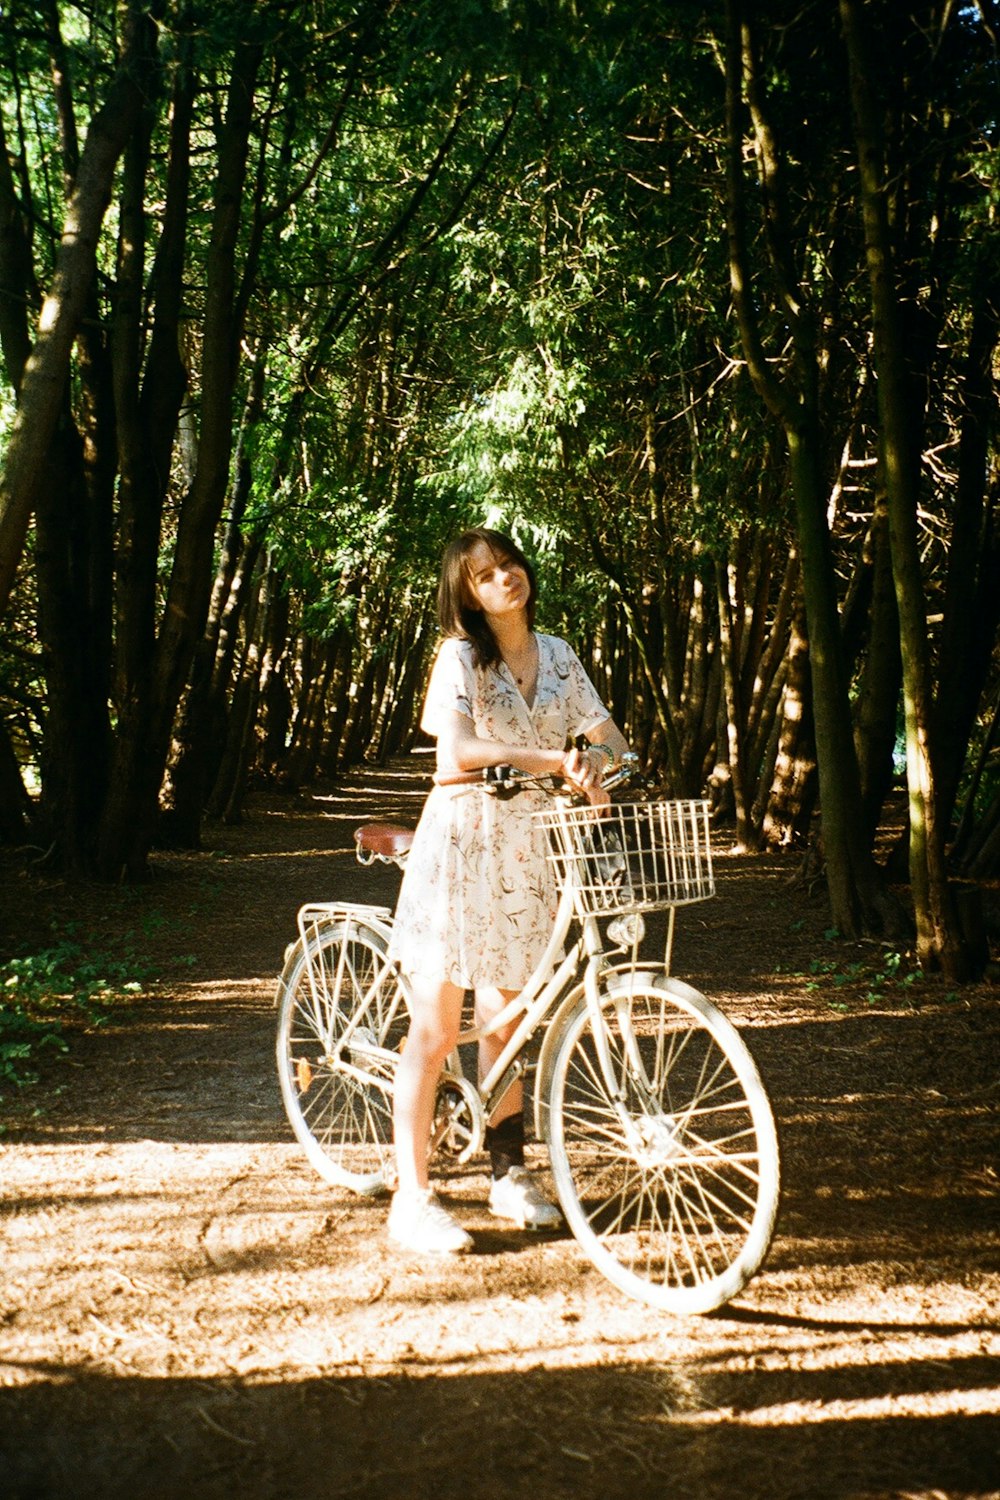 Eine Frau steht neben einem Fahrrad auf einem Feldweg